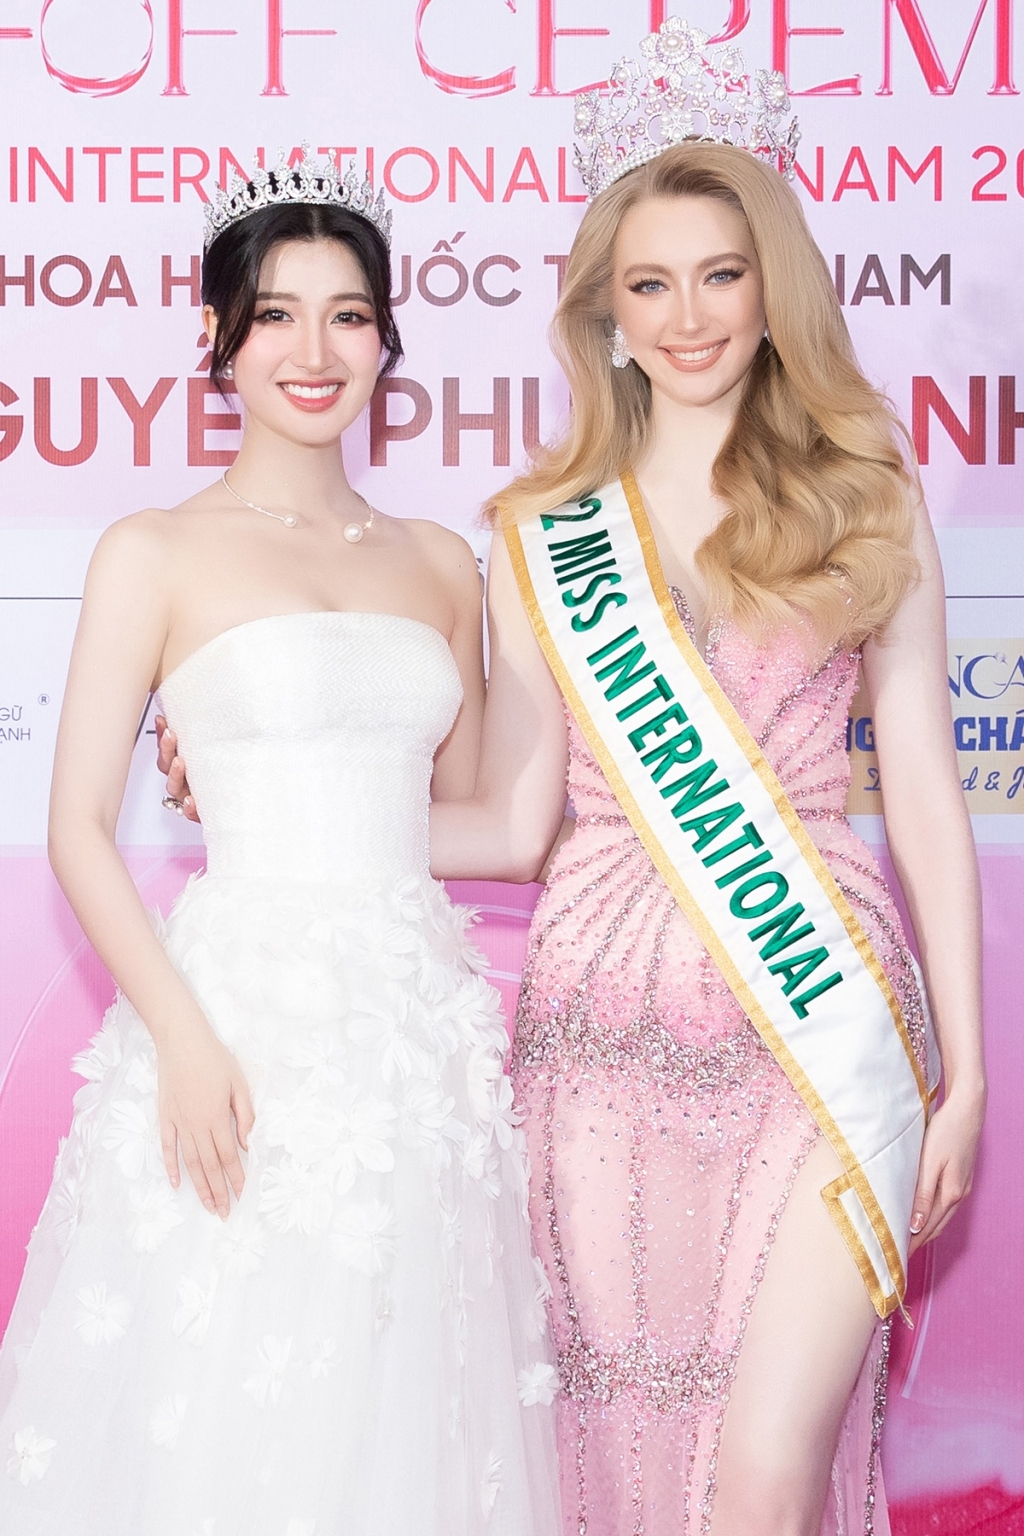 Phương Nhi chính thức trở thành đại diện Việt Nam tham gia Hoa hậu Quốc tế